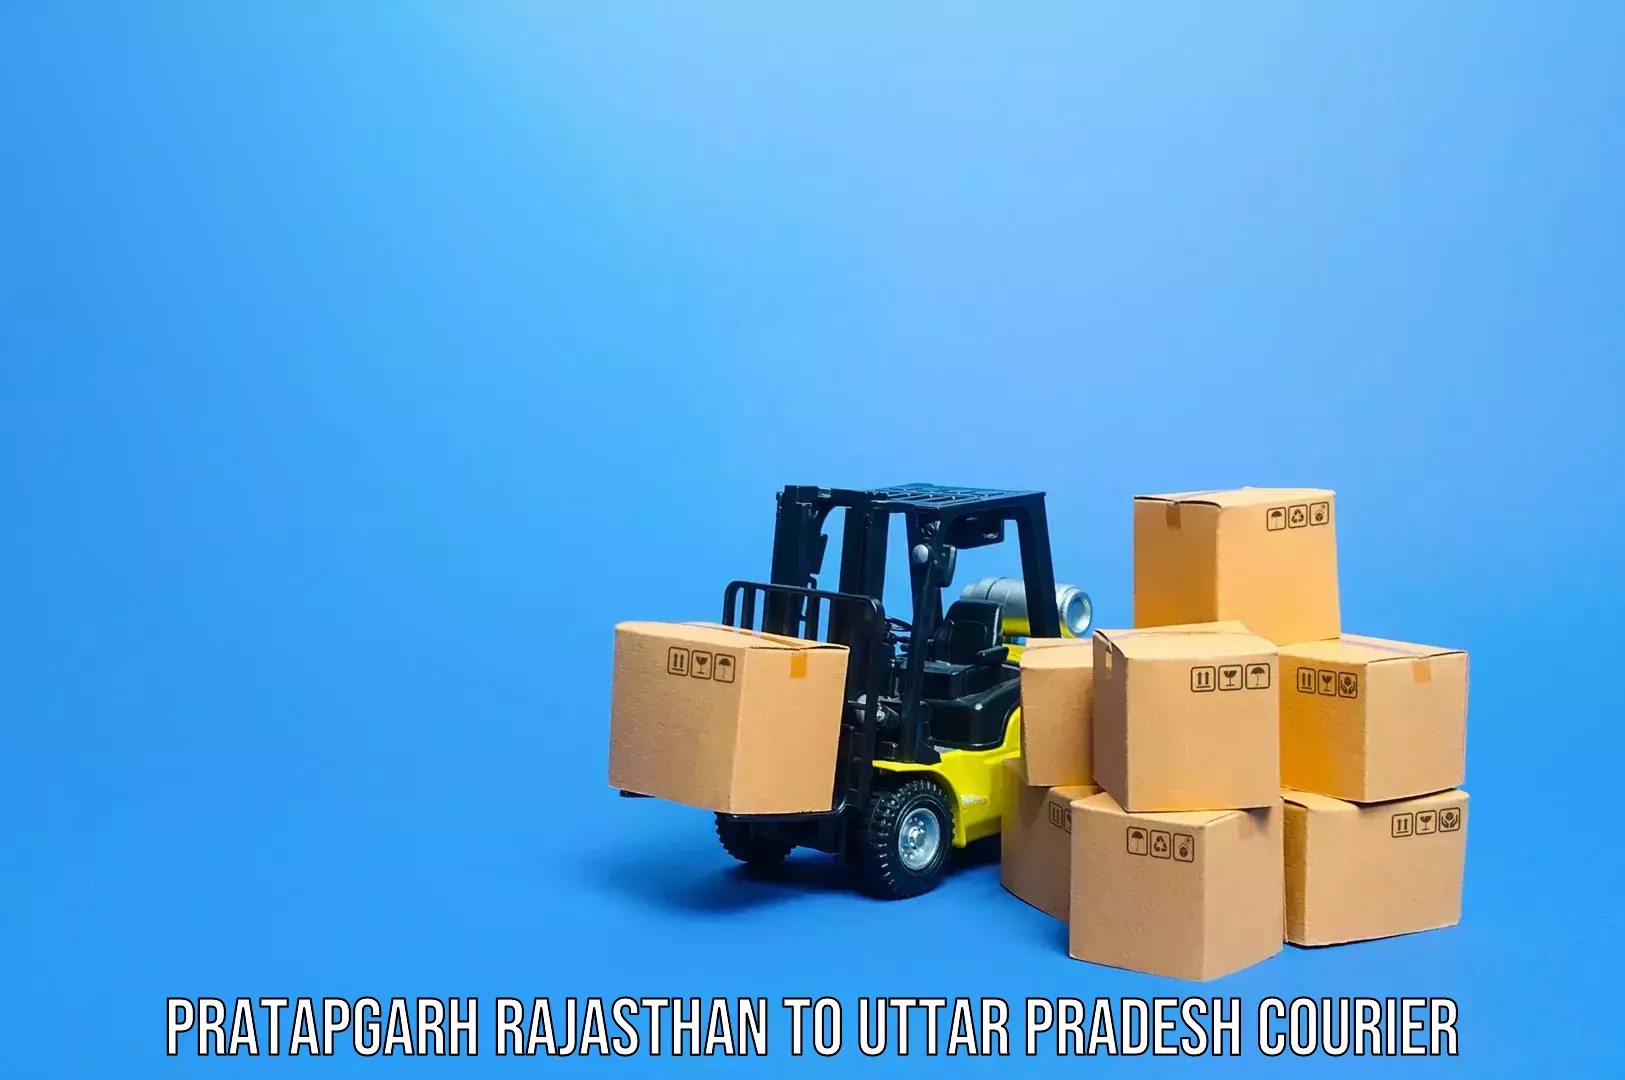 Luggage transport deals Pratapgarh Rajasthan to Pahasu